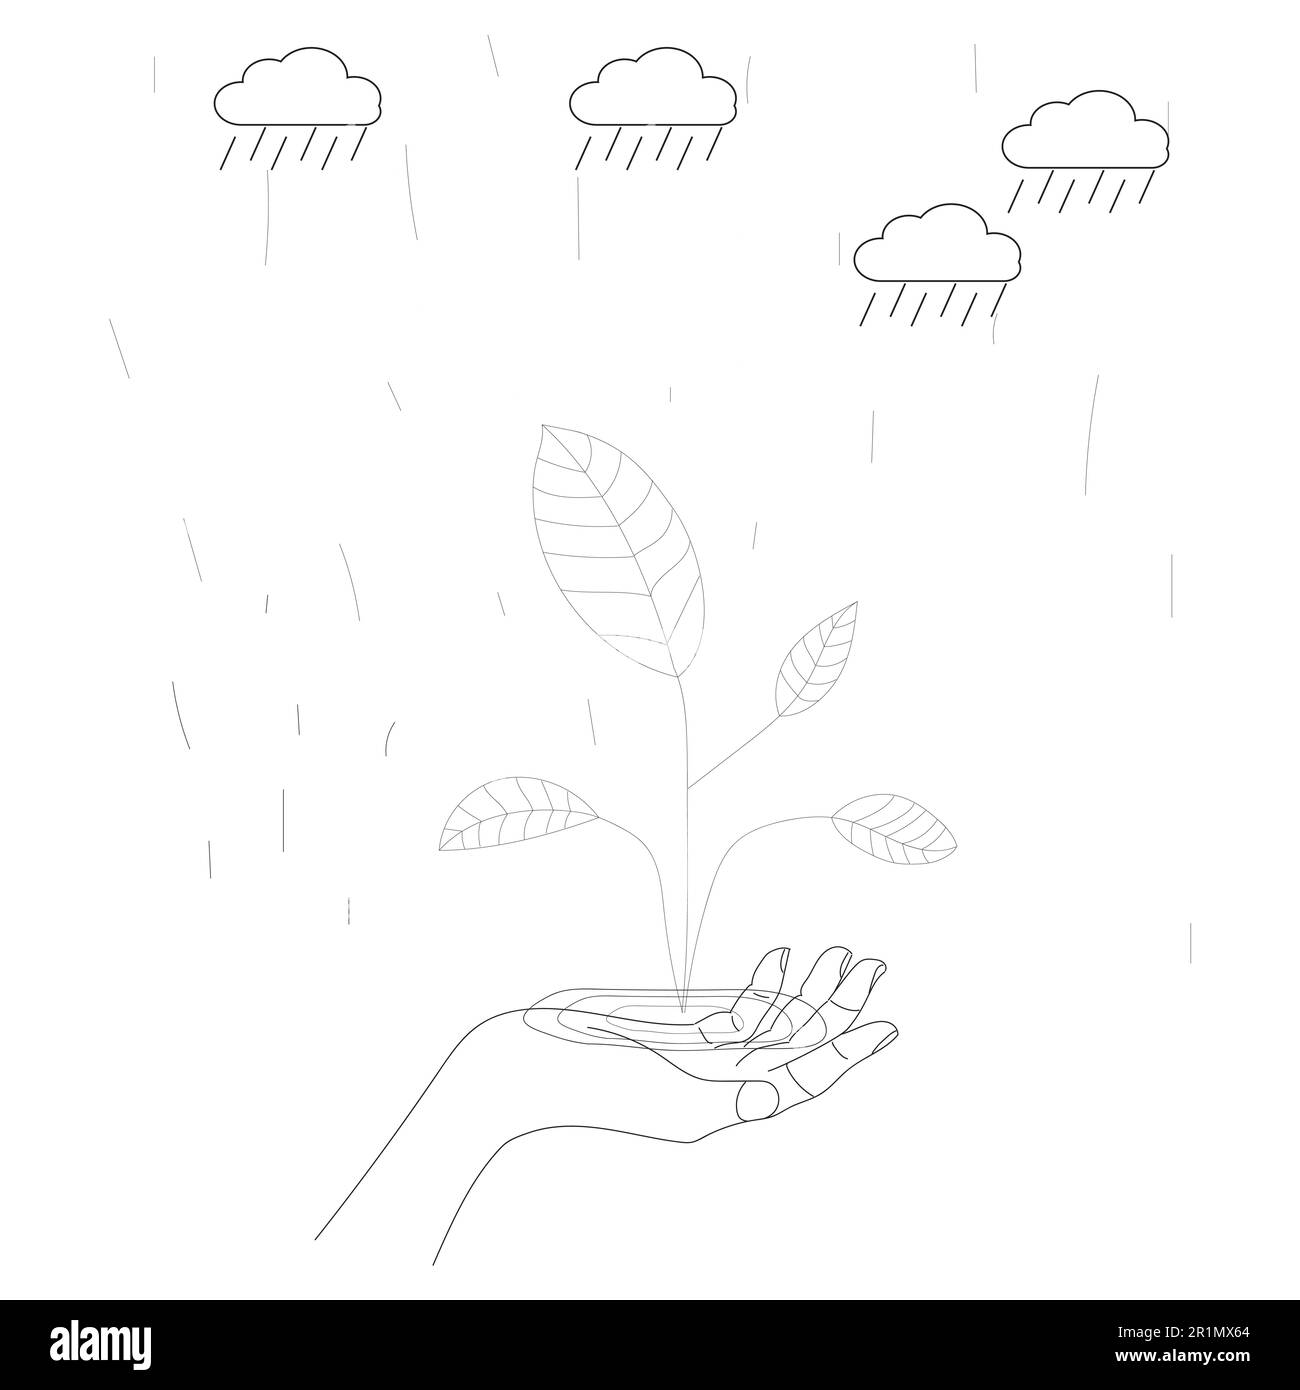 mani umane tenendo il globo della terra con albero, sole, nube di pioggia, linea o doodle, disegno della mano in bianco e nero, ecologia del pianeta della terra degli ambientatori del mondo Foto Stock